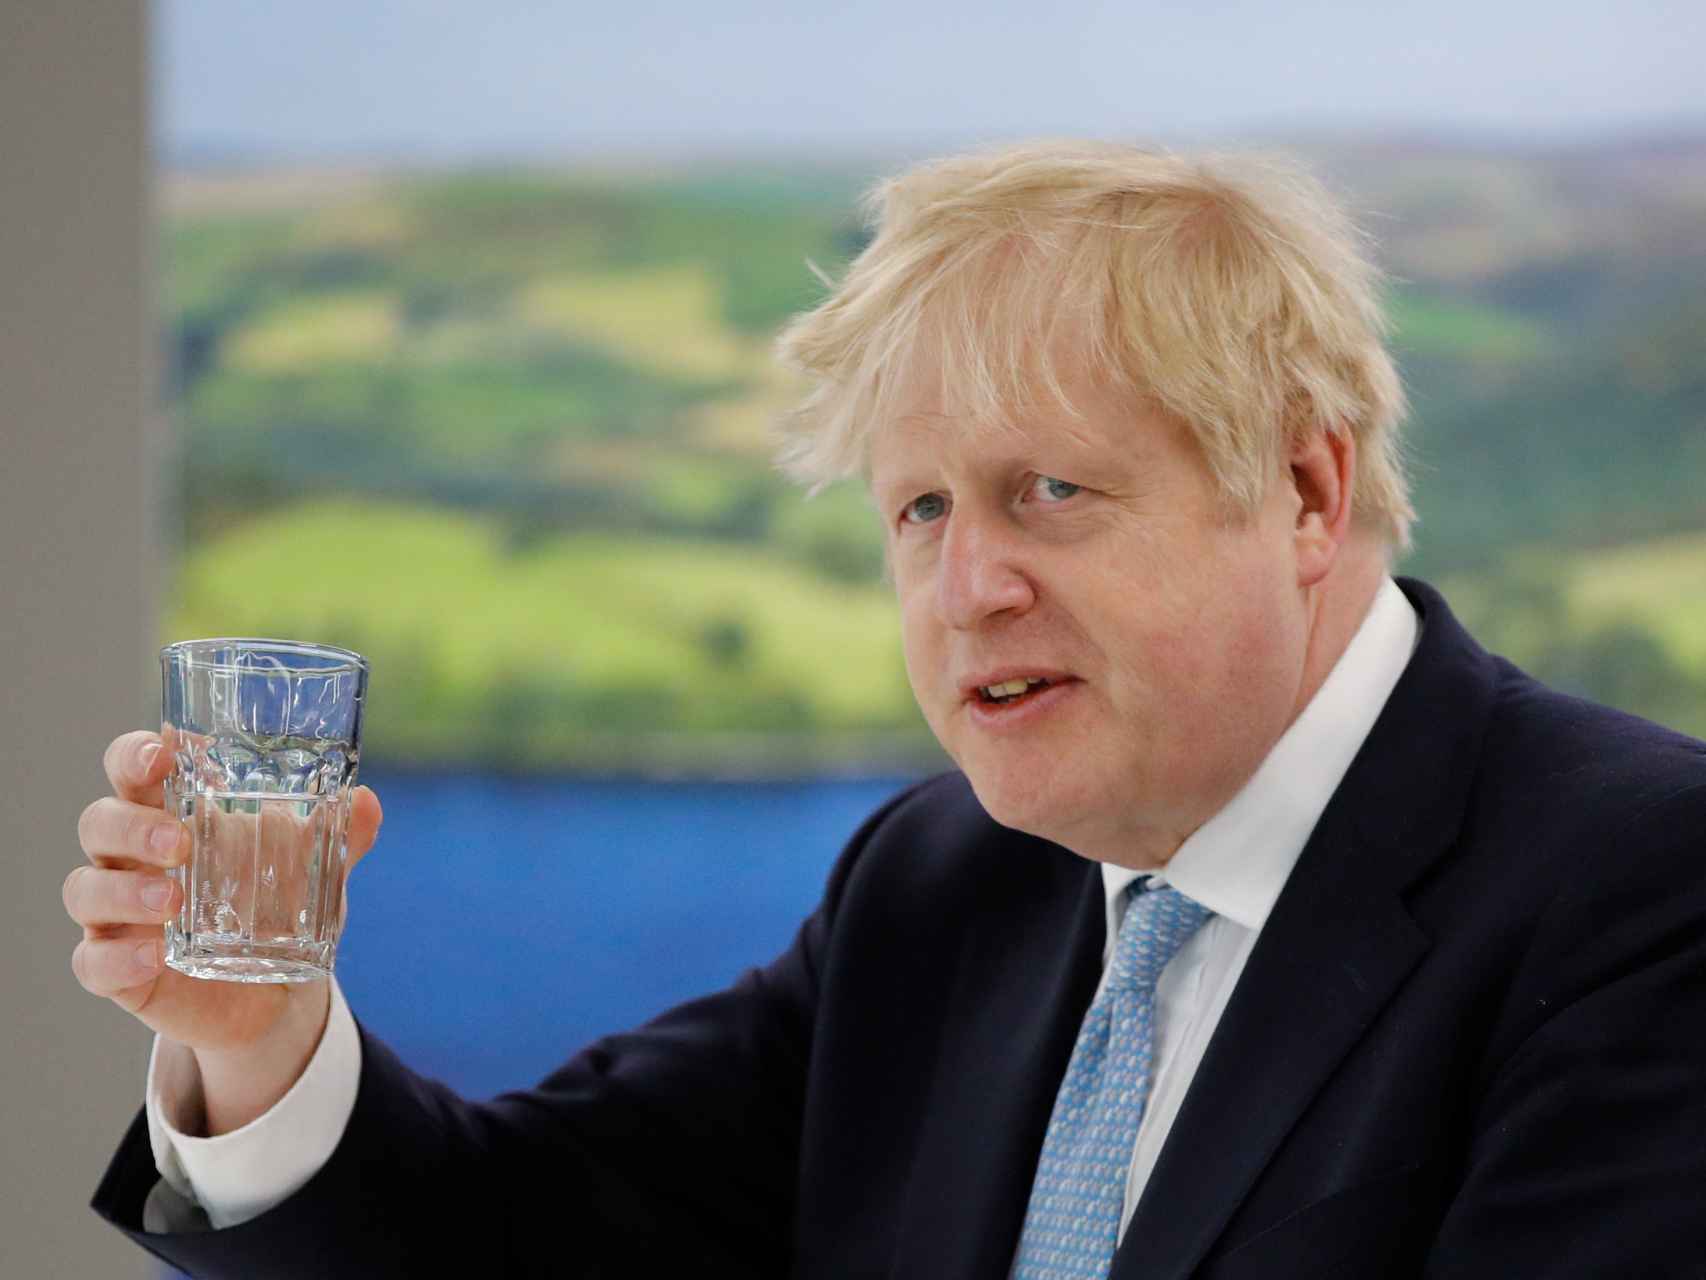 El viaje de Boris Johnson a una isla del Caribe que le salió gratis y puede acabar pagando muy caro